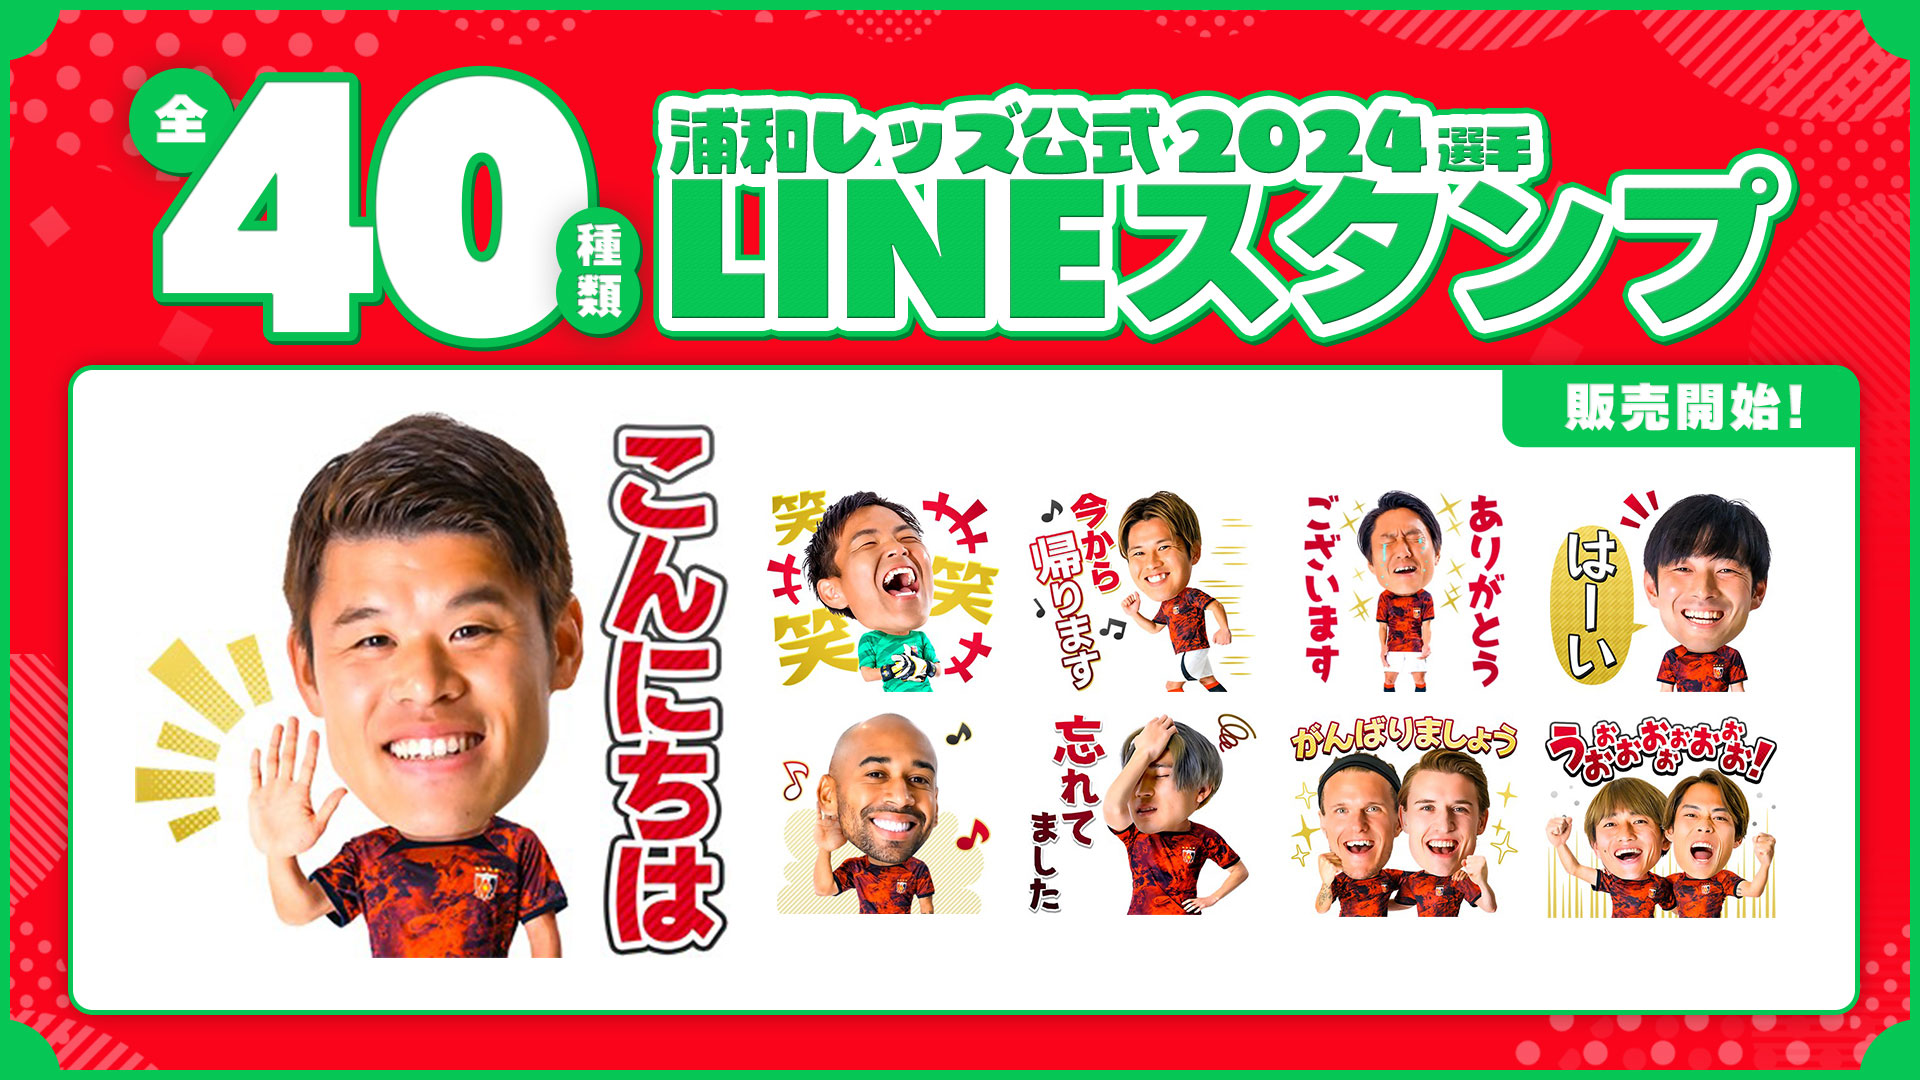 ตราประทับ LINE ผู้เล่นอย่างเป็นทางการ Urawa Reds ปี 2024